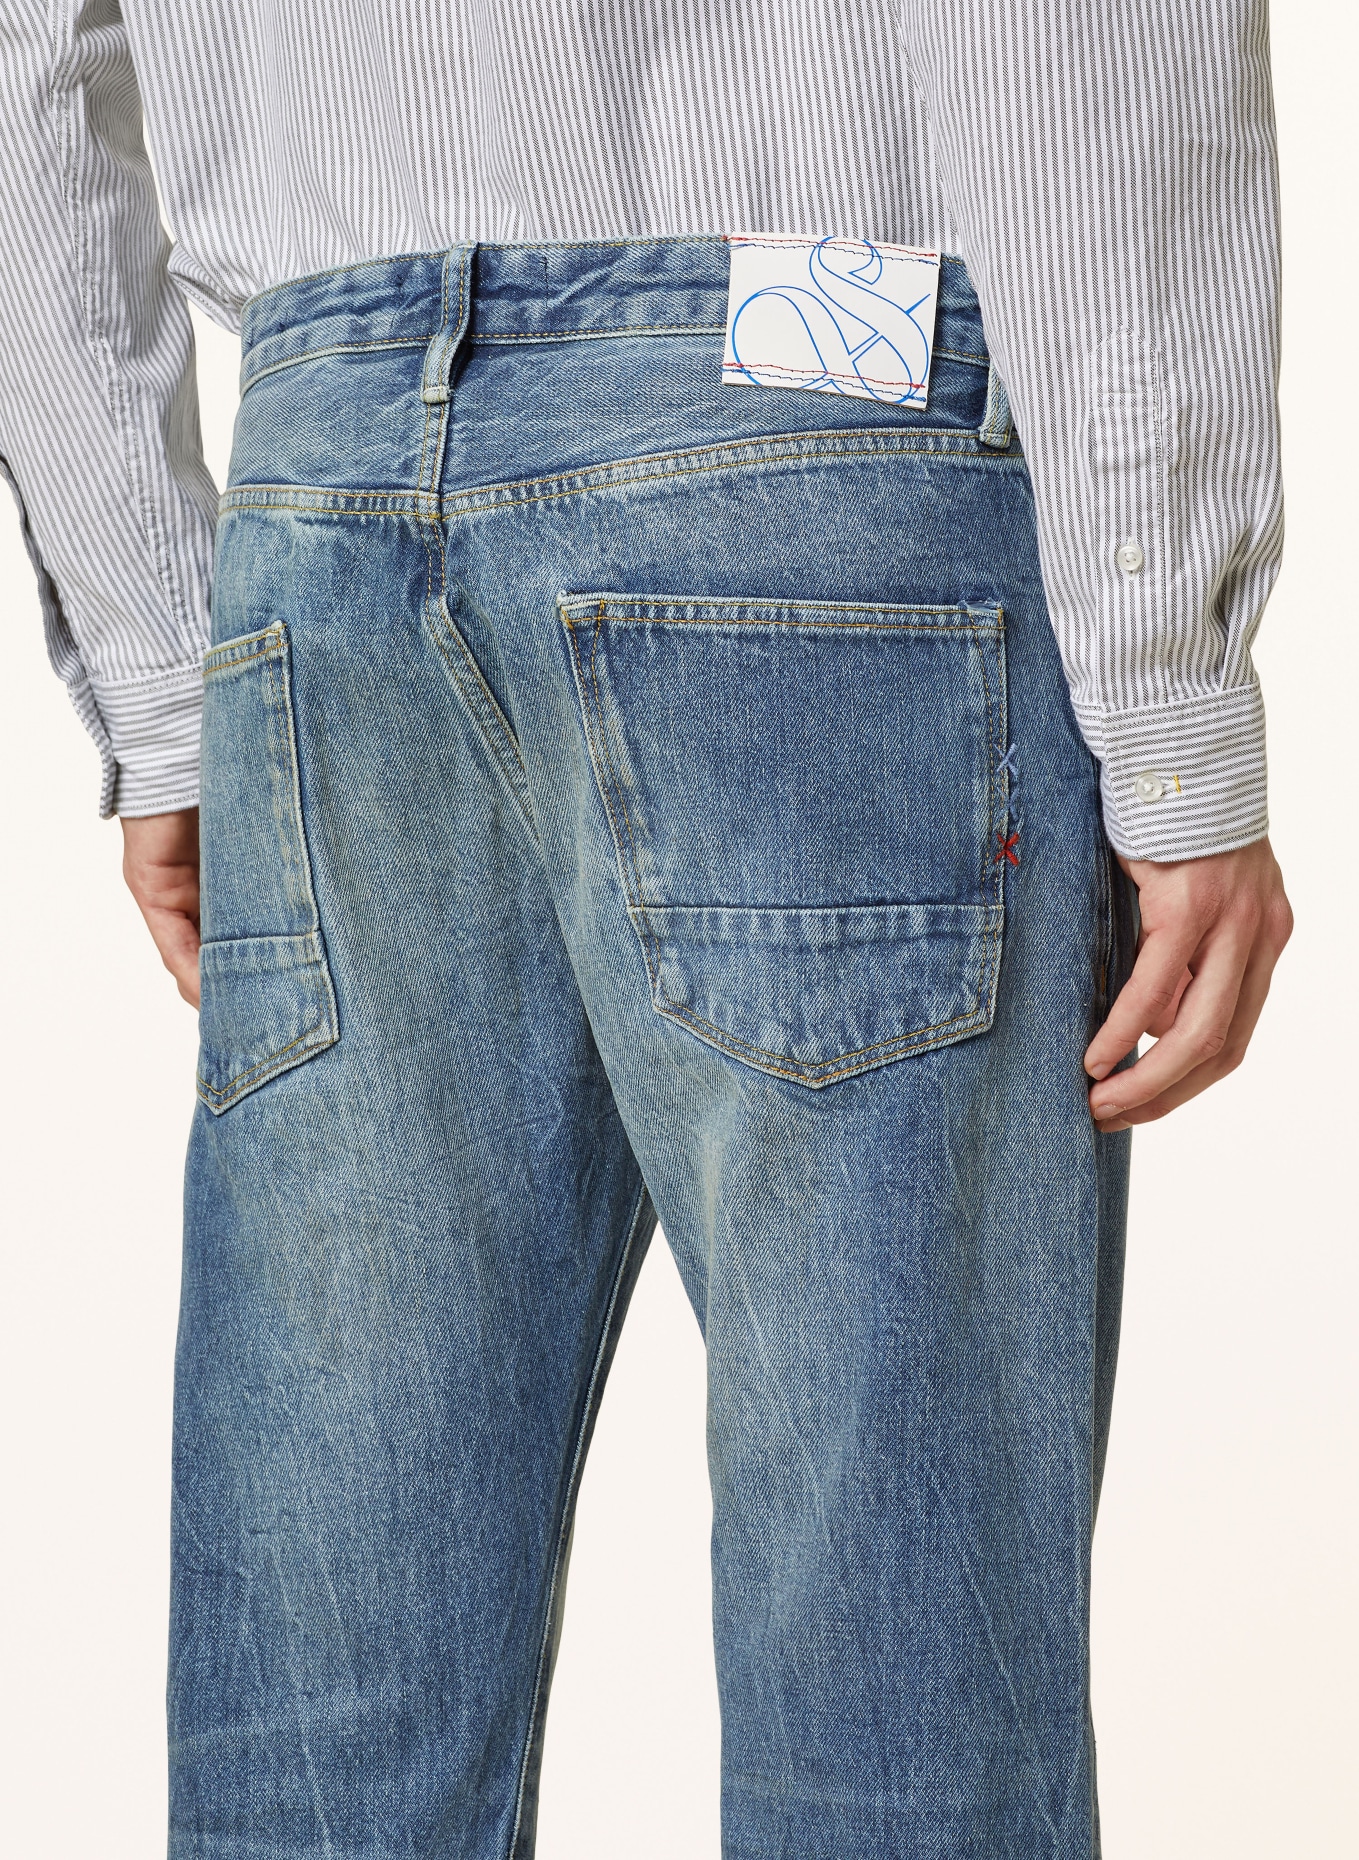 SCOTCH & SODA Jeans RALSTON Regular Slim Fit, Farbe: 7052 Foot Print (Bild 6)